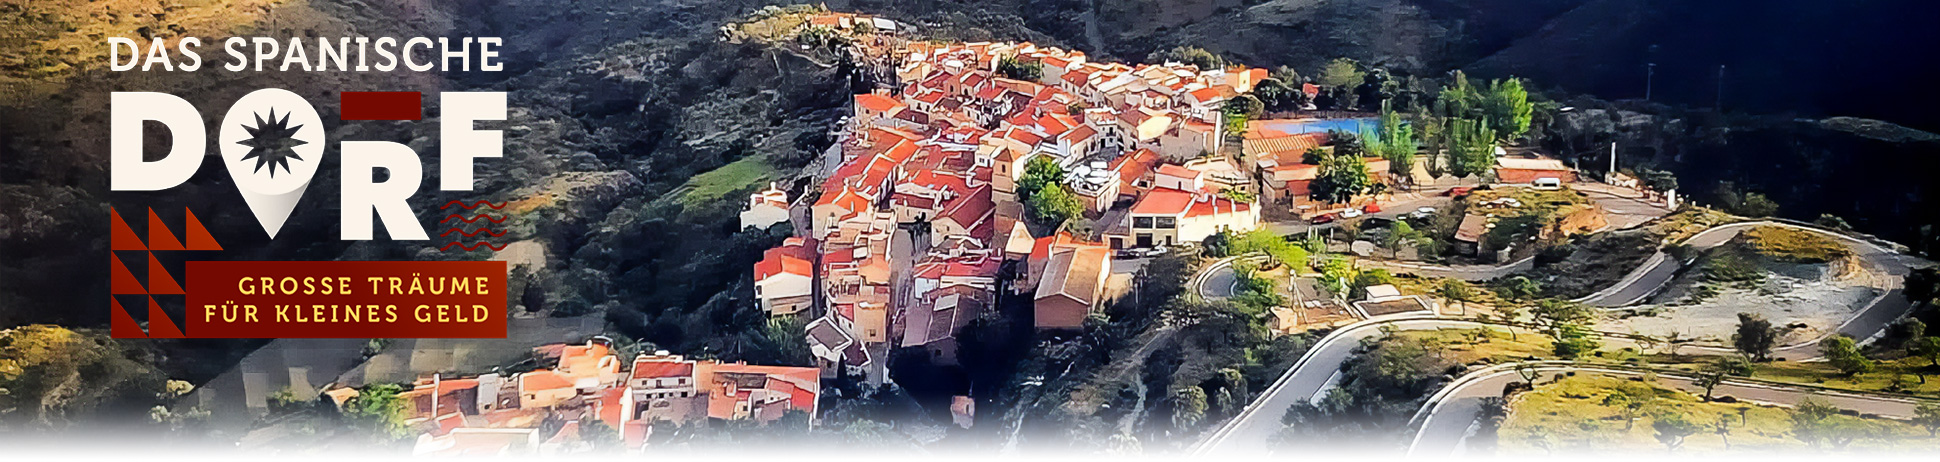 Das spanische Dorf